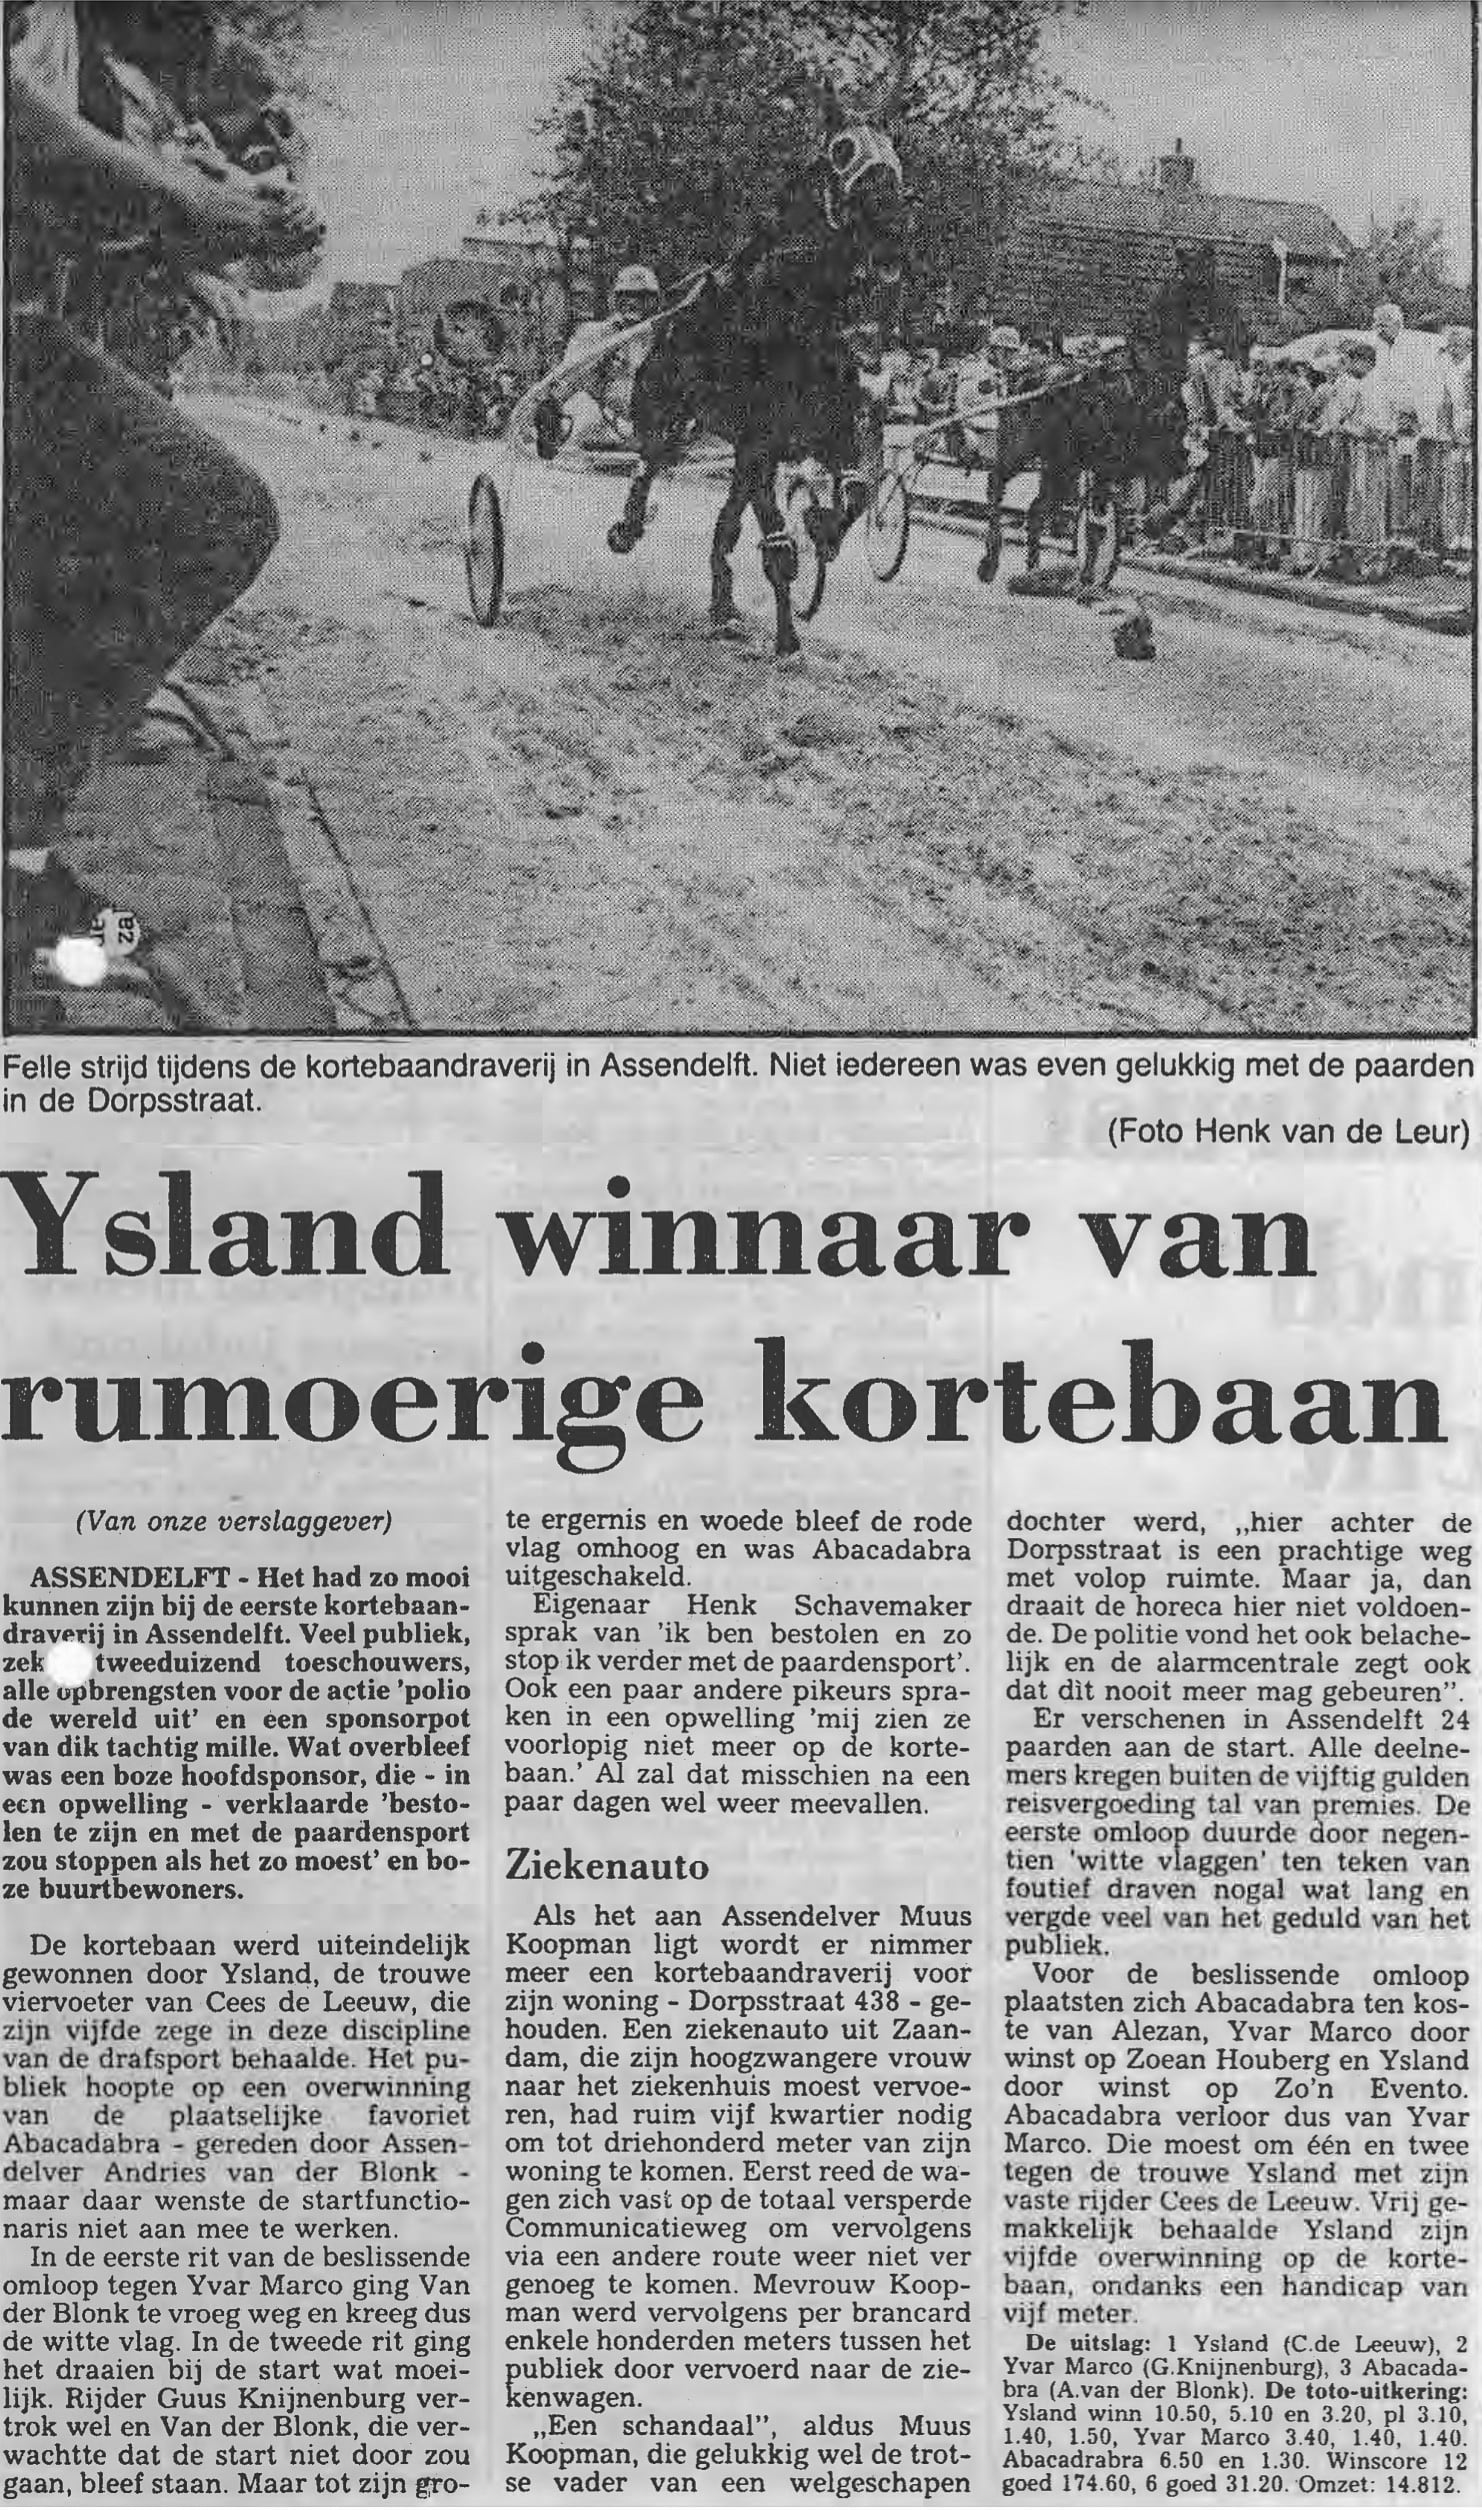 Verslag in Daglad Zaanstreek over de kortebaandraverij 1988 in Assendelft